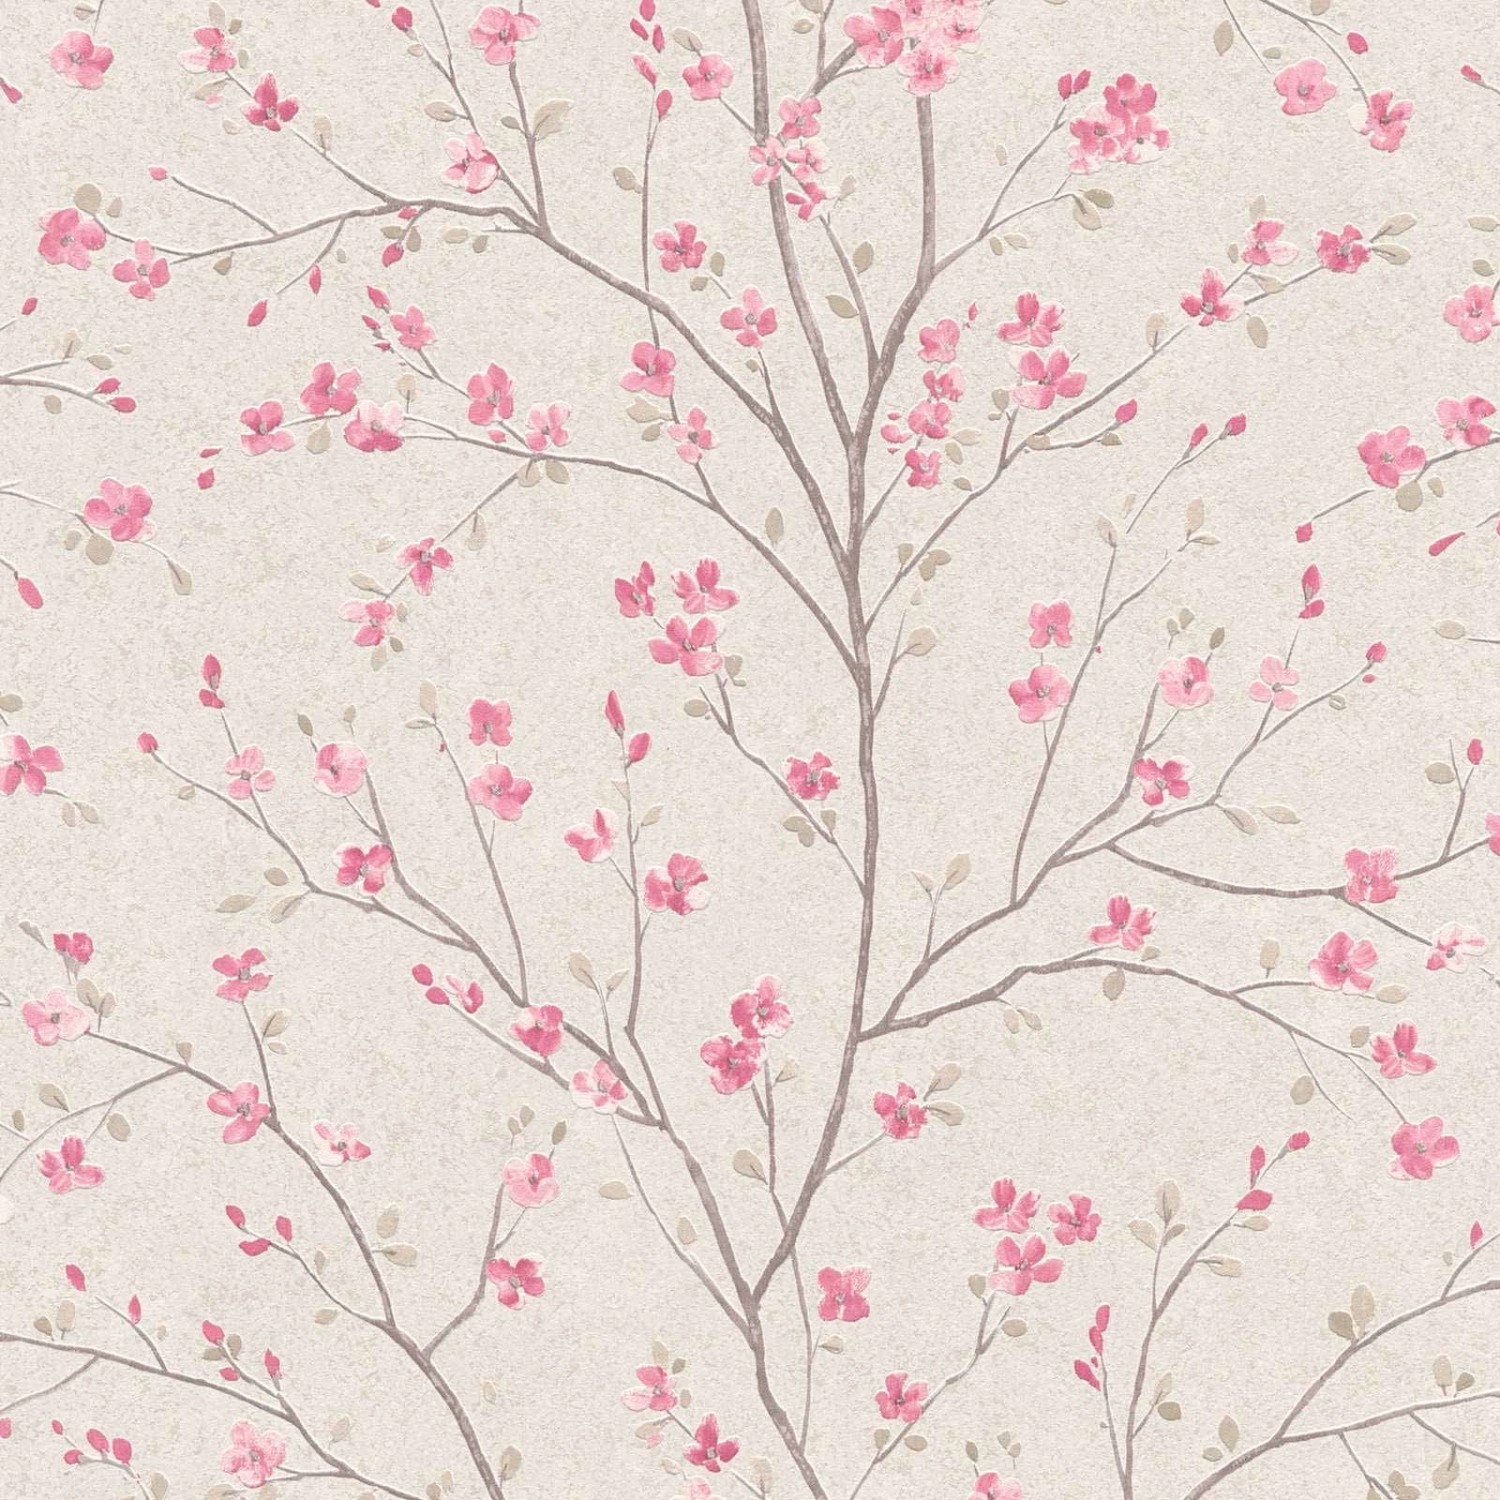 Bricoflor Kirschblüten Tapete Weiß Rosa Japanische Vliestapete mit Blumen Romantisch Chinesische Frühlingstapete Floral von Bricoflor